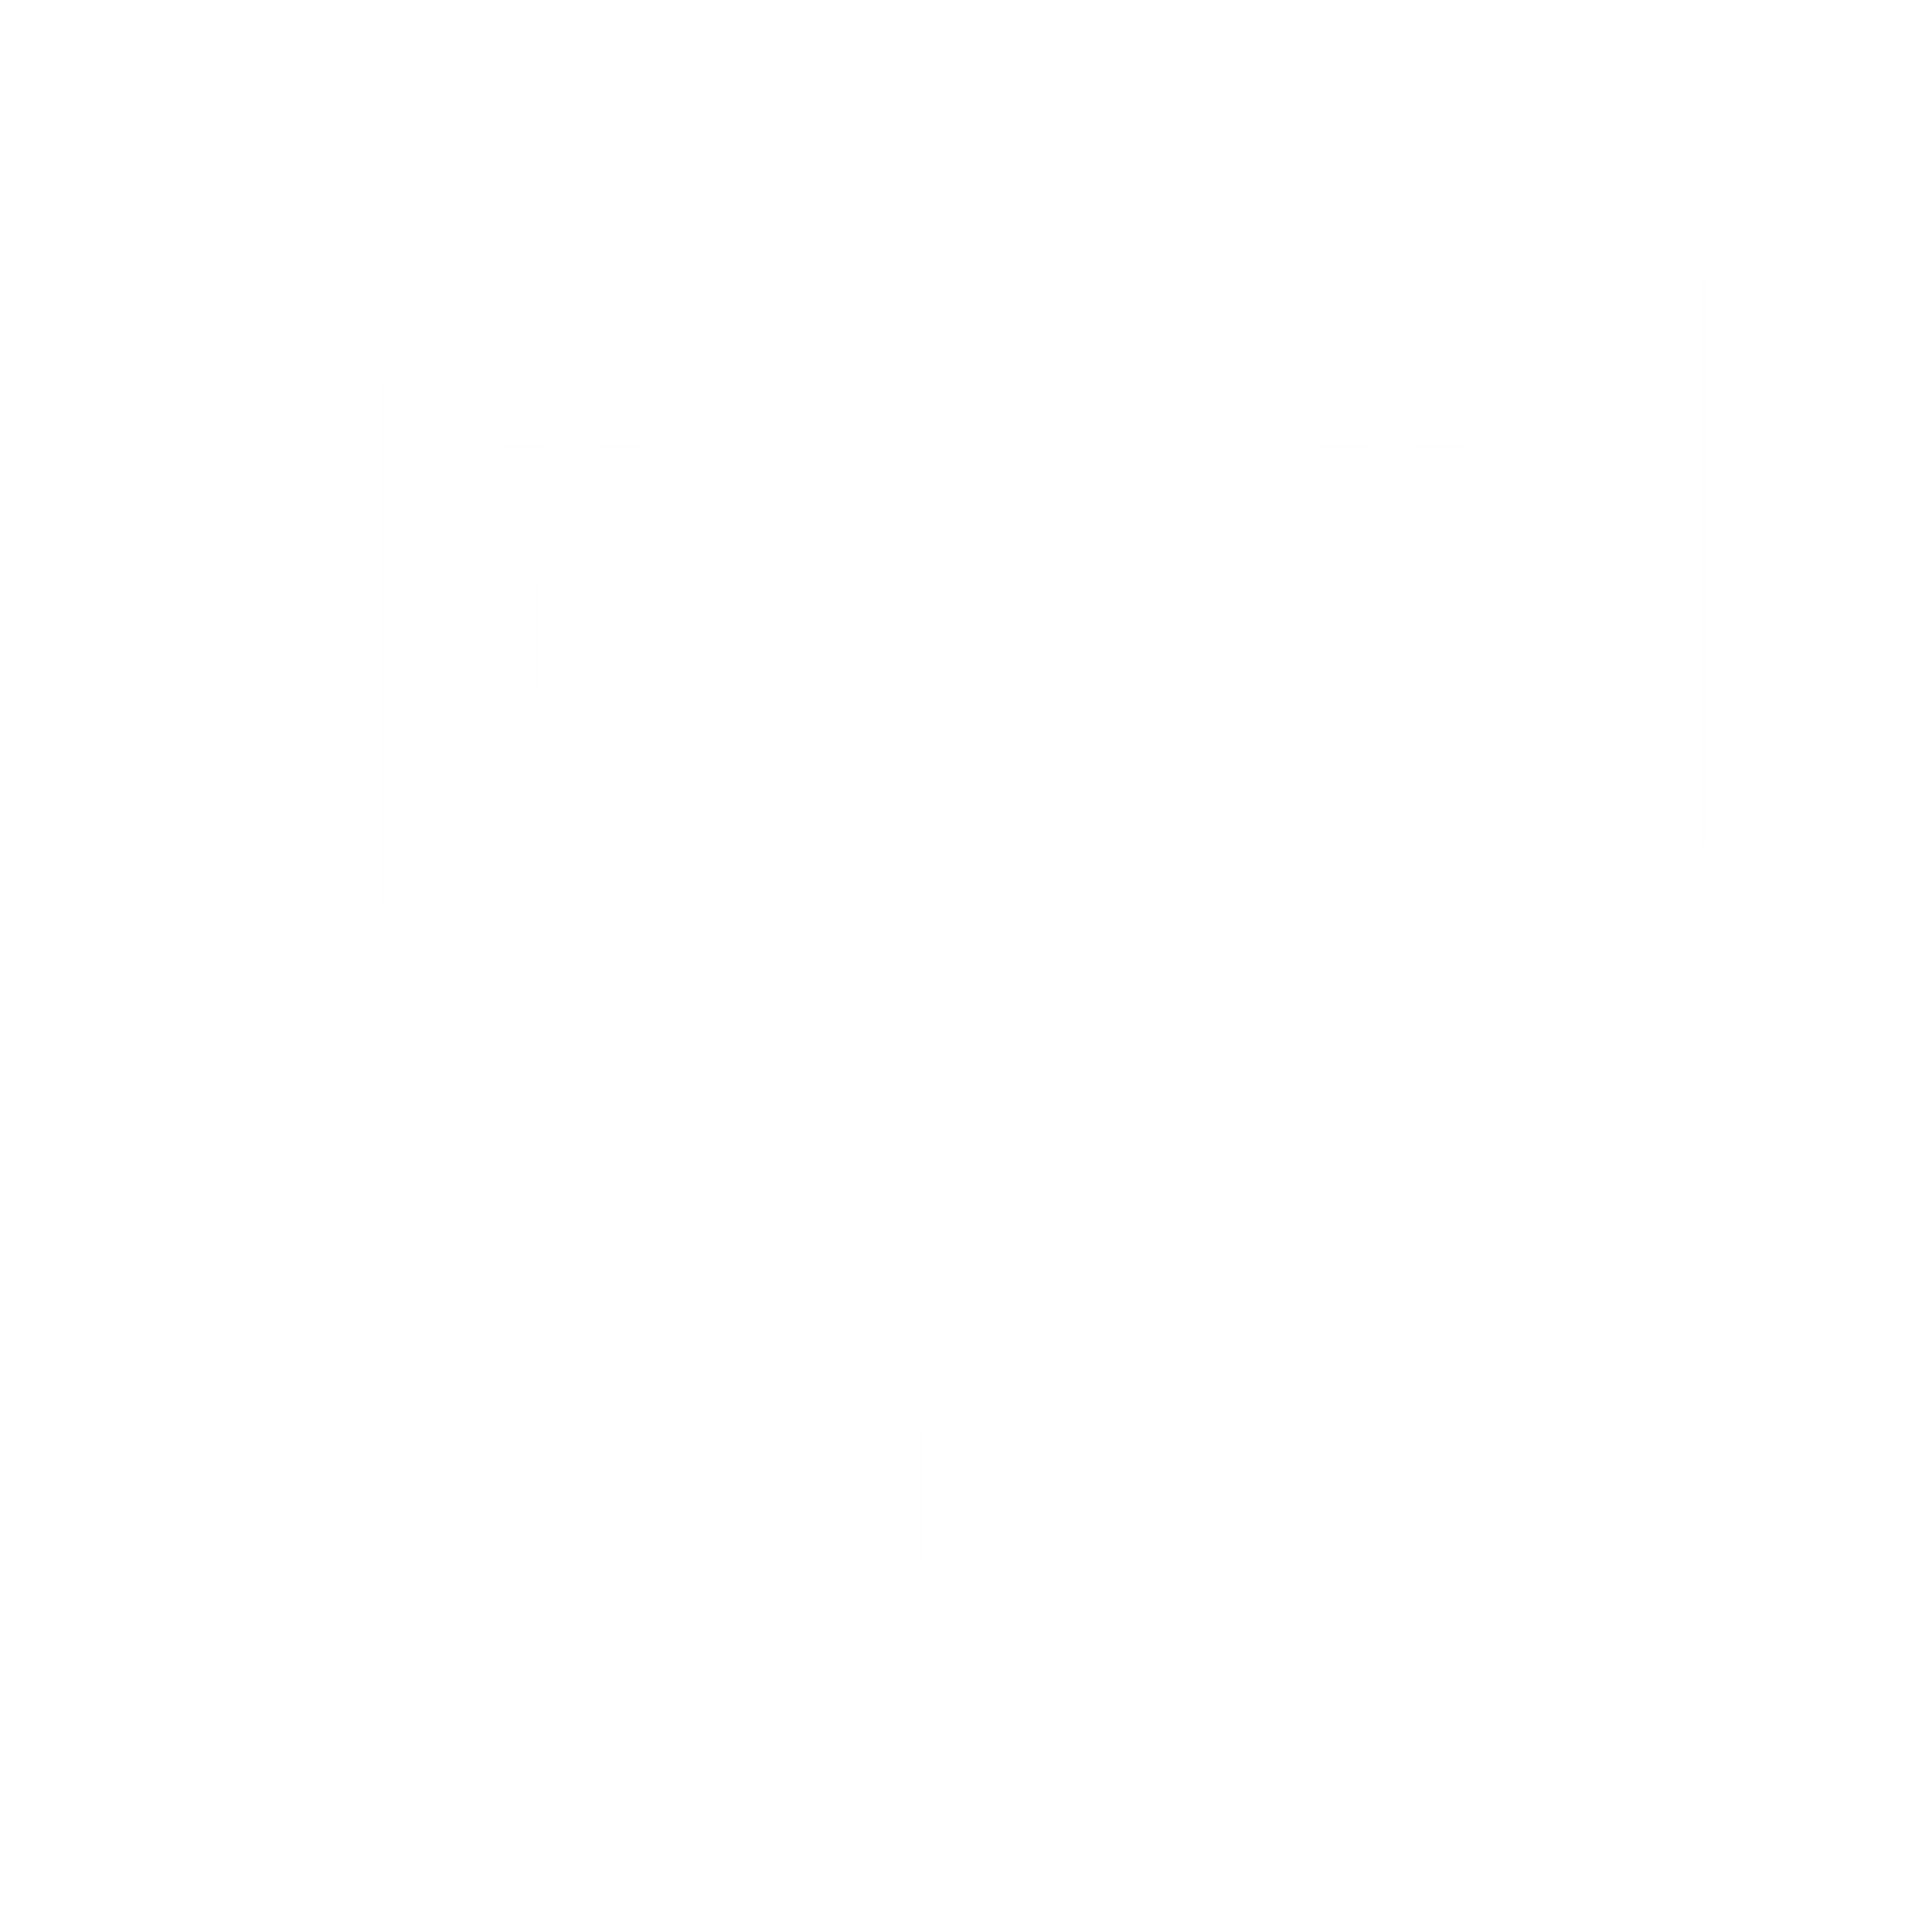 76 Fence Company Illinois